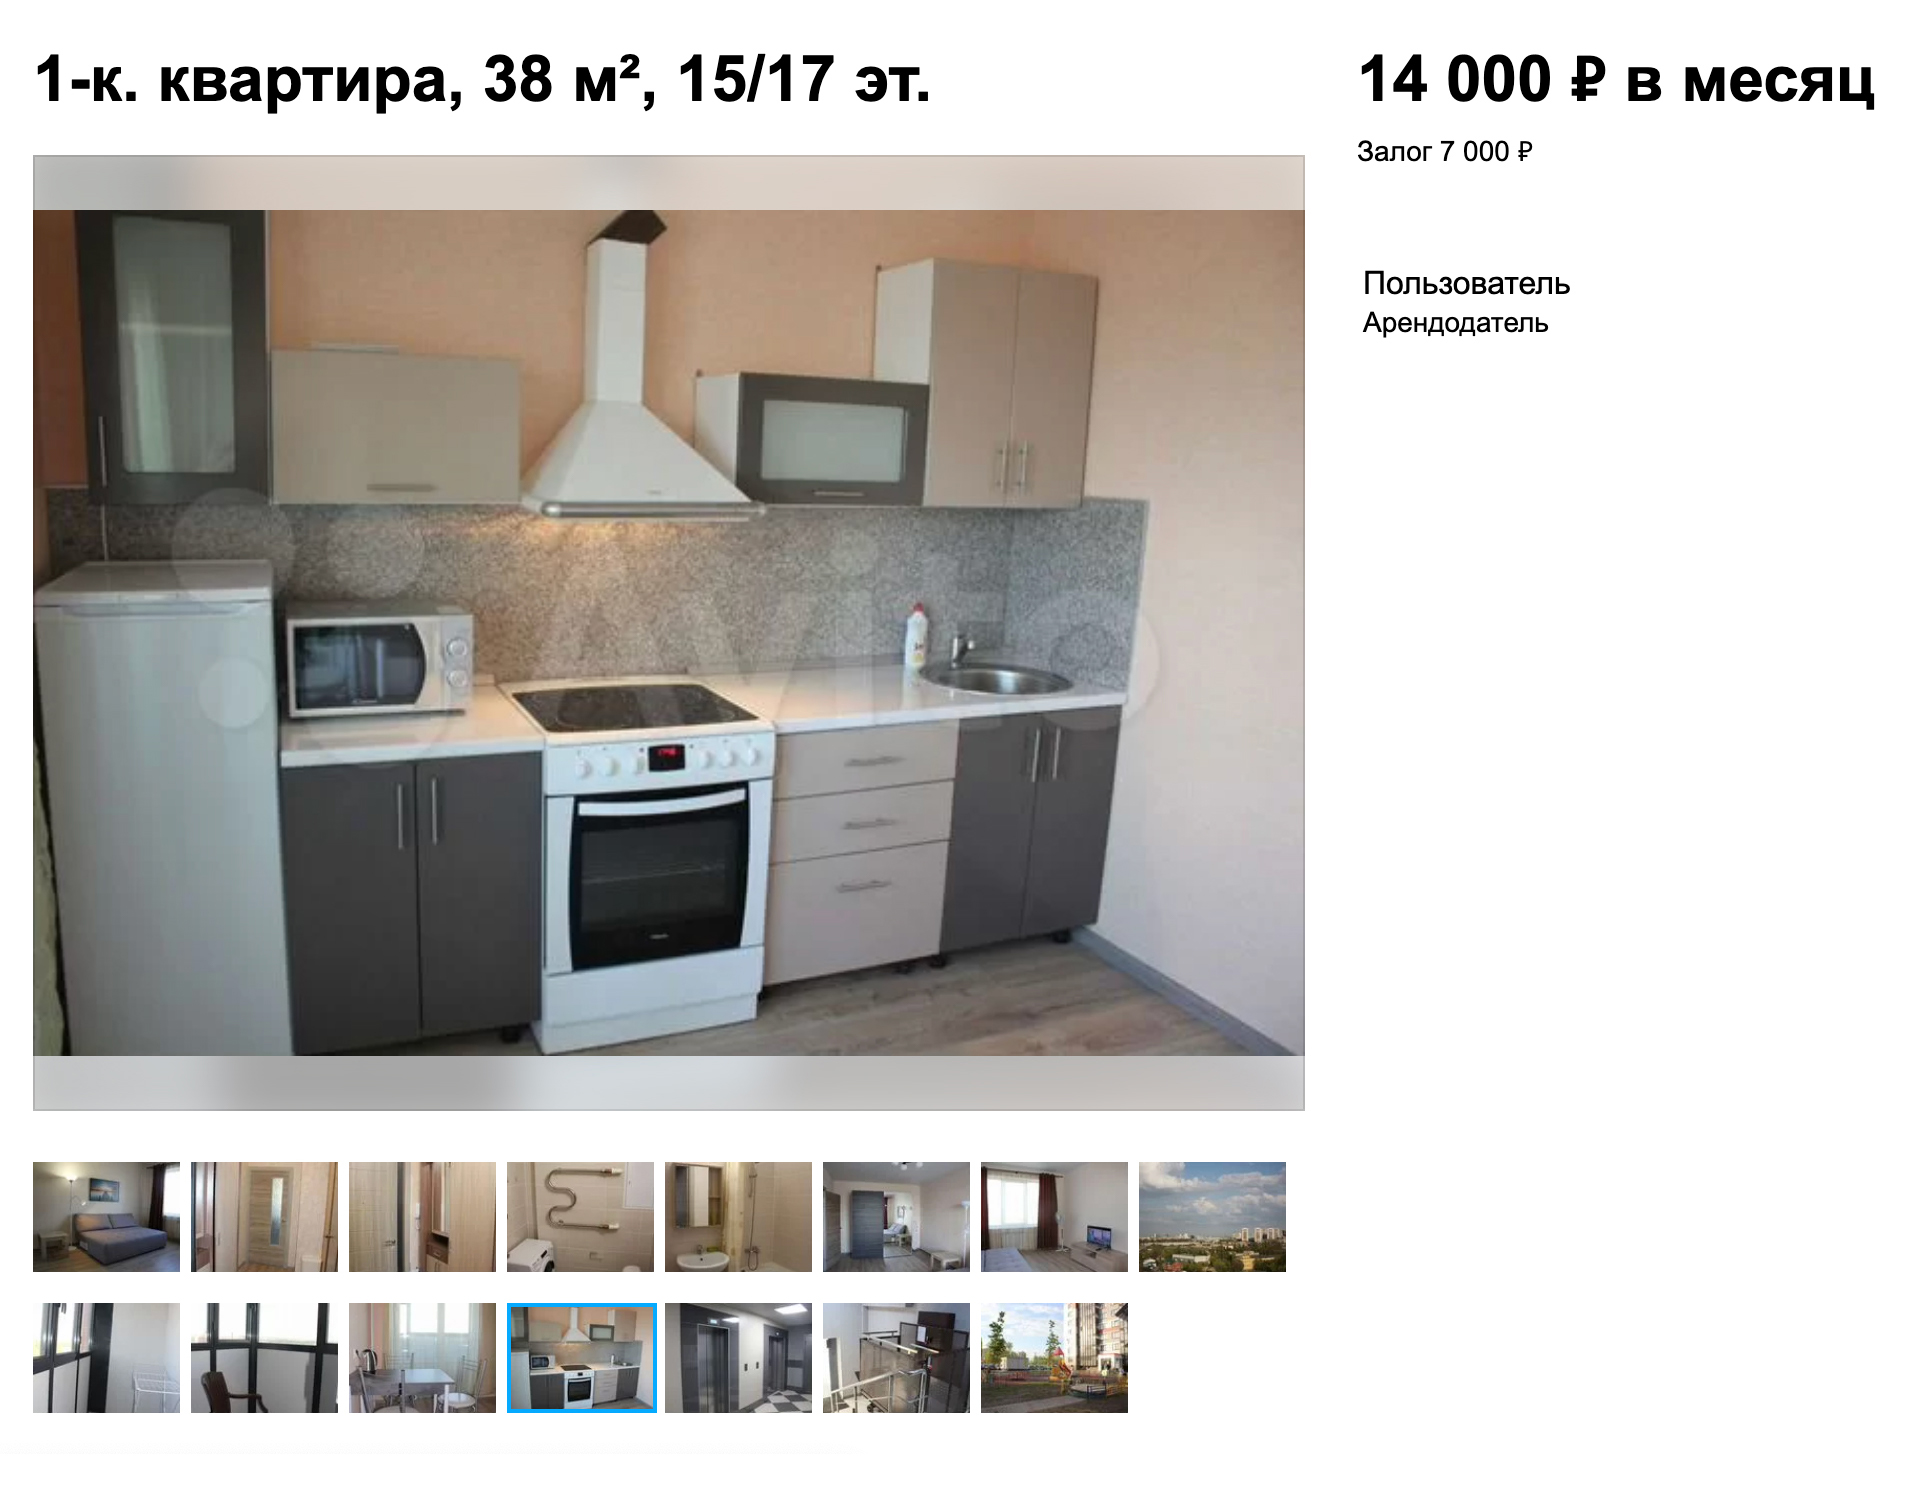 Примерно такие квартиры в аренду предлагают в Воронеже. Это неплохой вариант, но у себя я хотела сделать по⁠-⁠другому. Источник: avito.ru